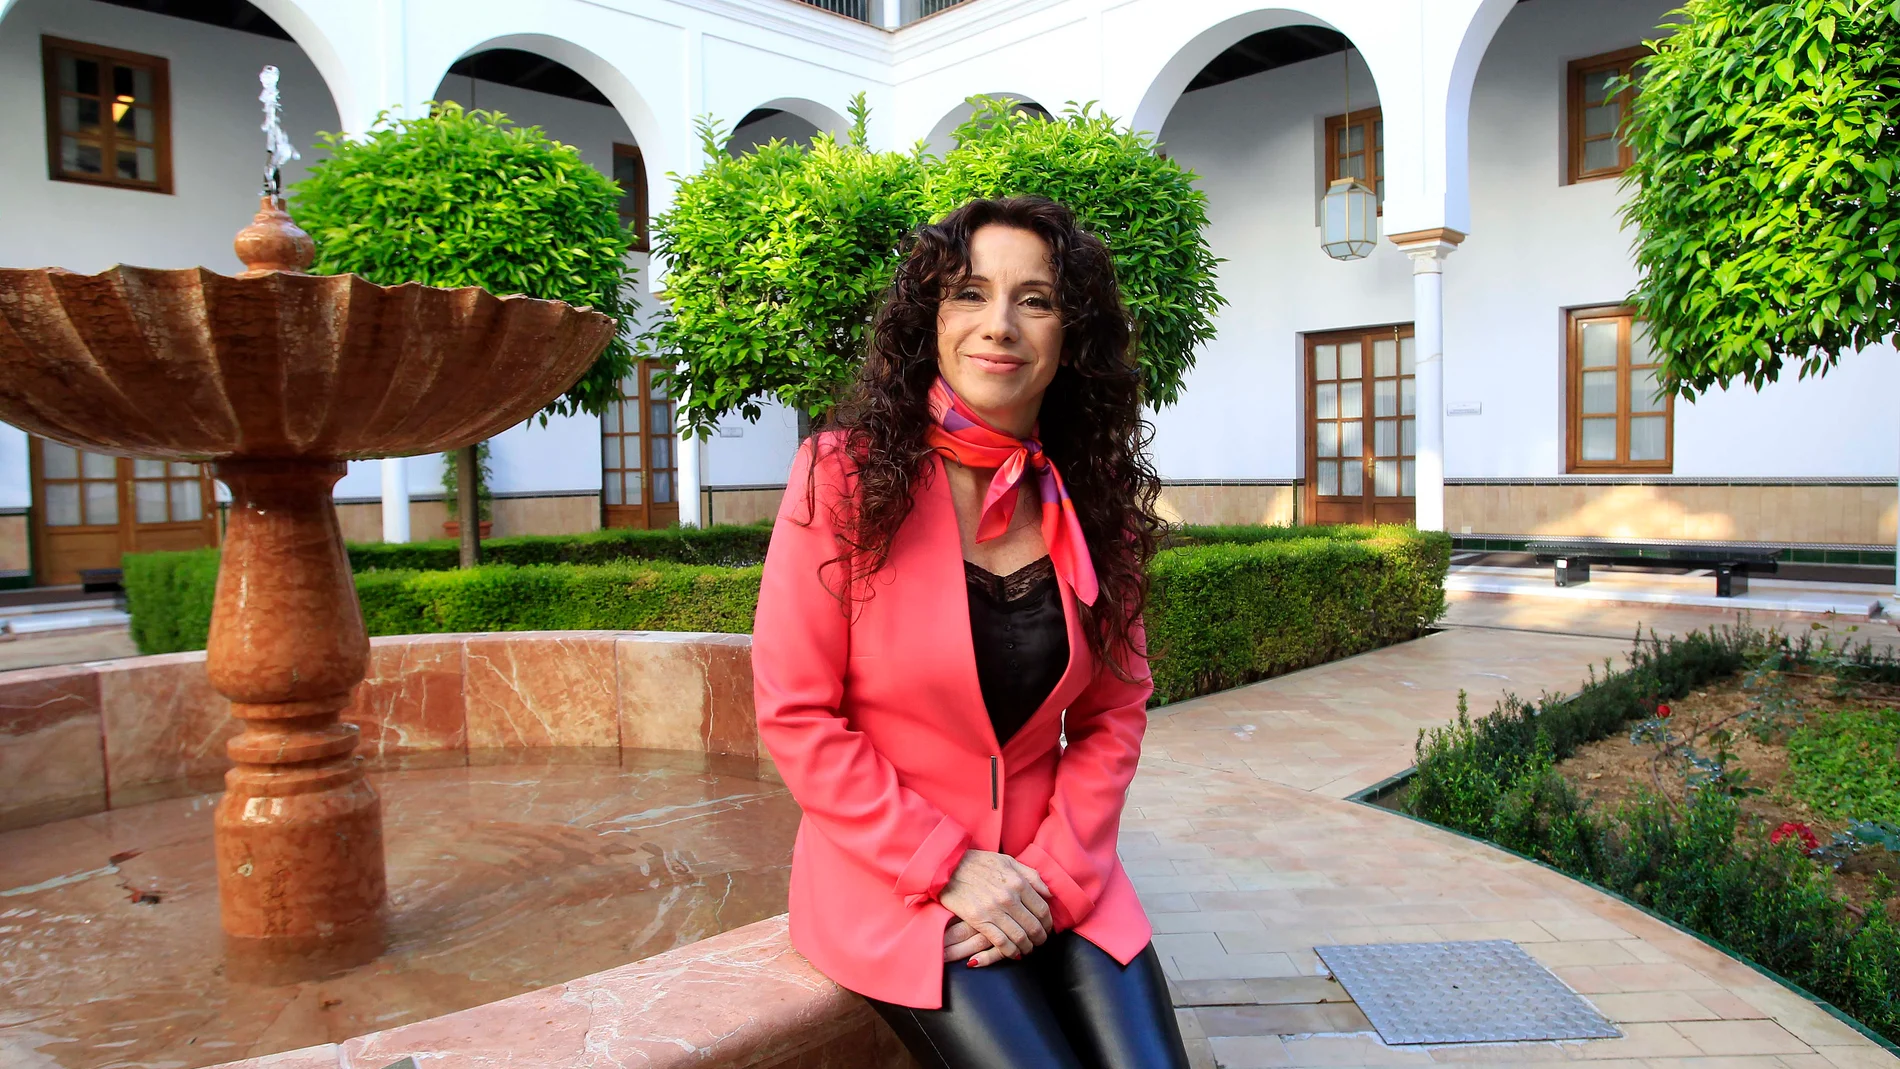 La consejera andaluza Rocío Ruiz, en uno de los patios del Parlamento, en una imagen de archivo